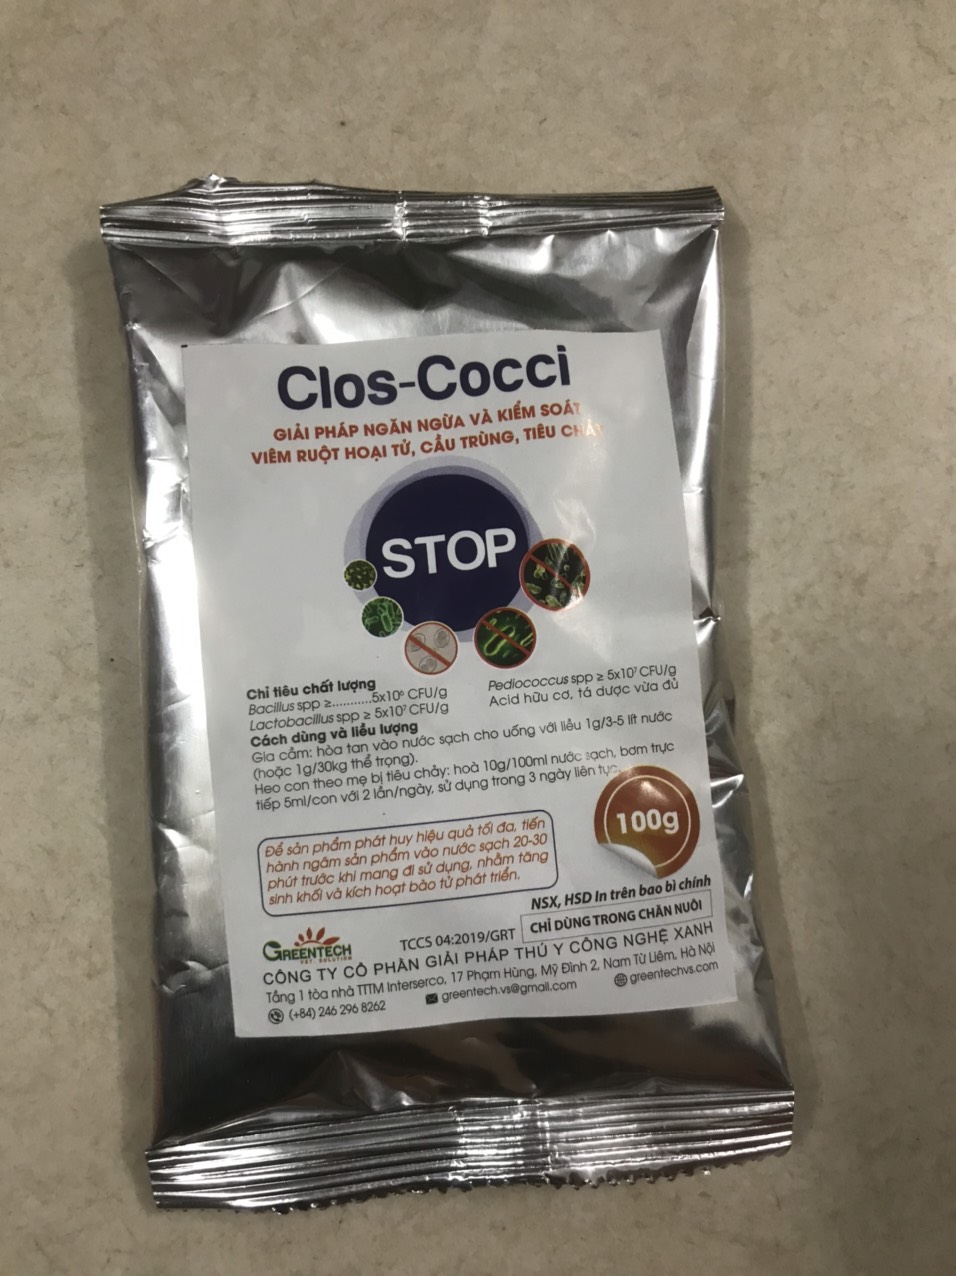 Clos cocci stop (100g) ngăn ngừa cầu trùng, tiêu chảy cho chó, mèo, gia súc, gia cầm